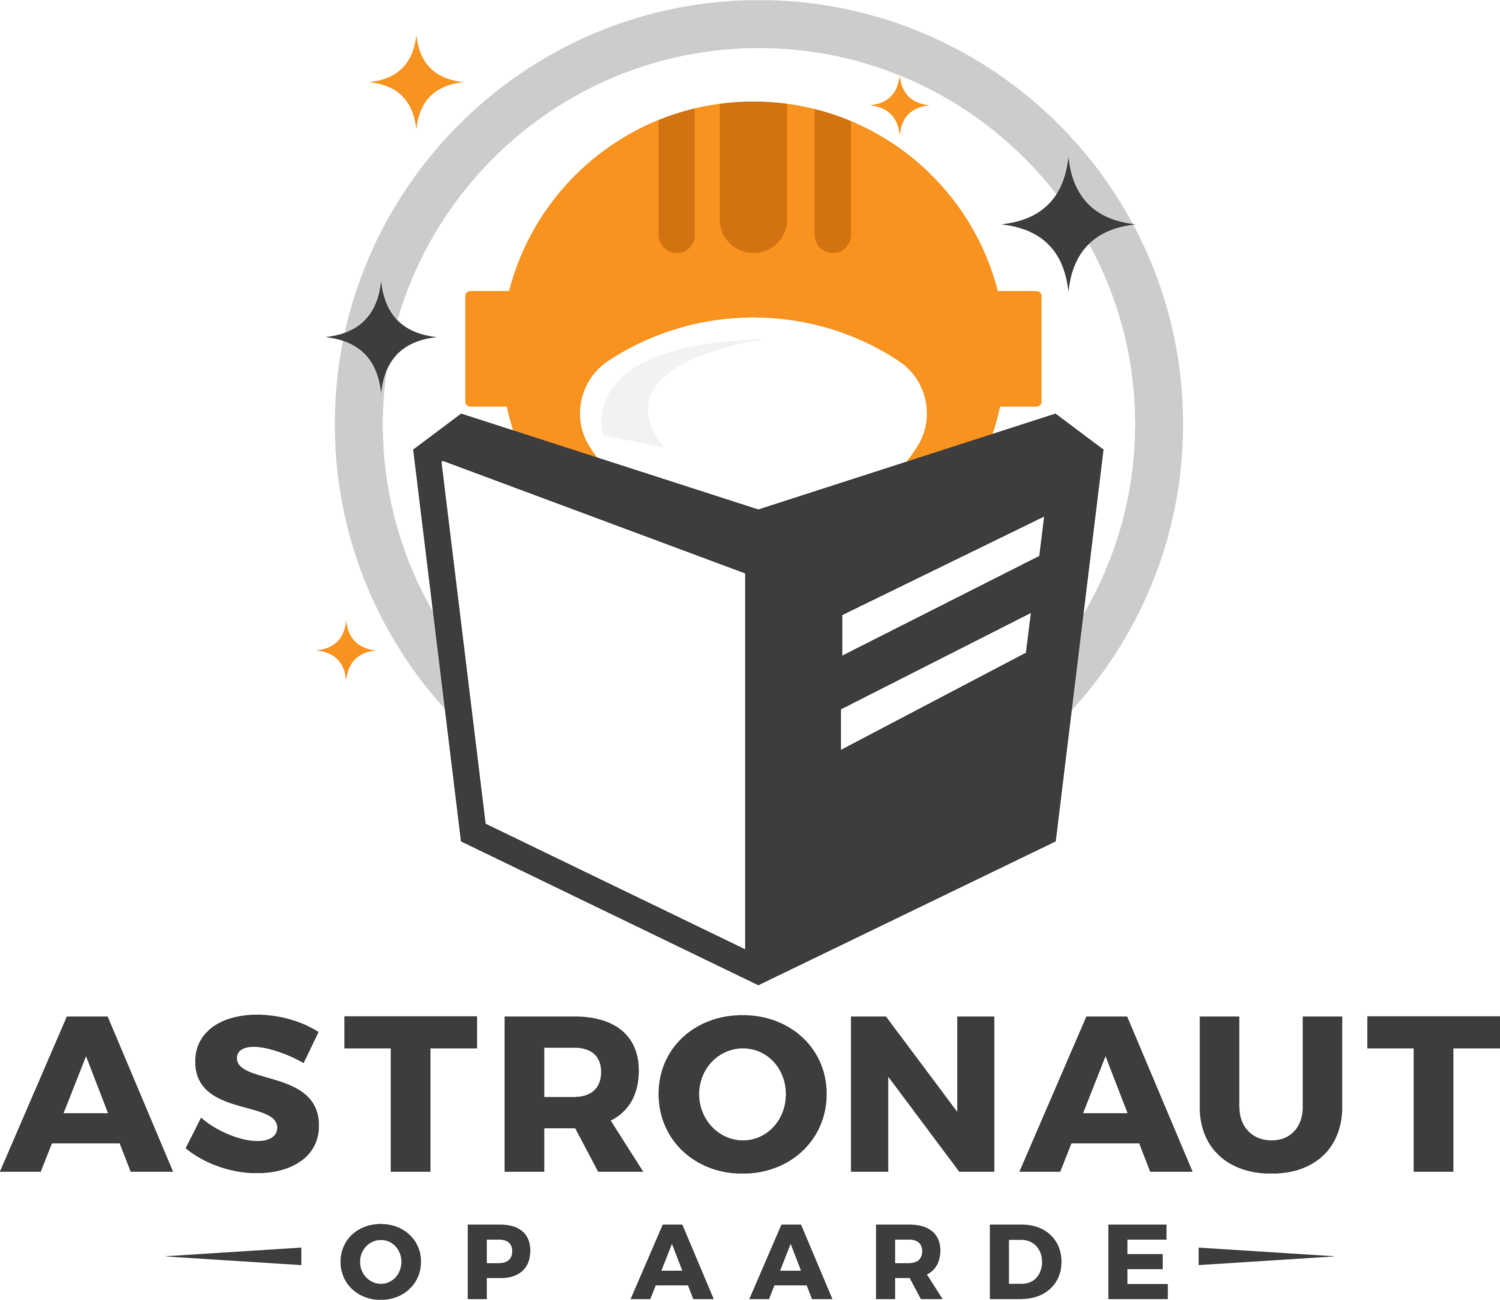 Astronaut op aarde